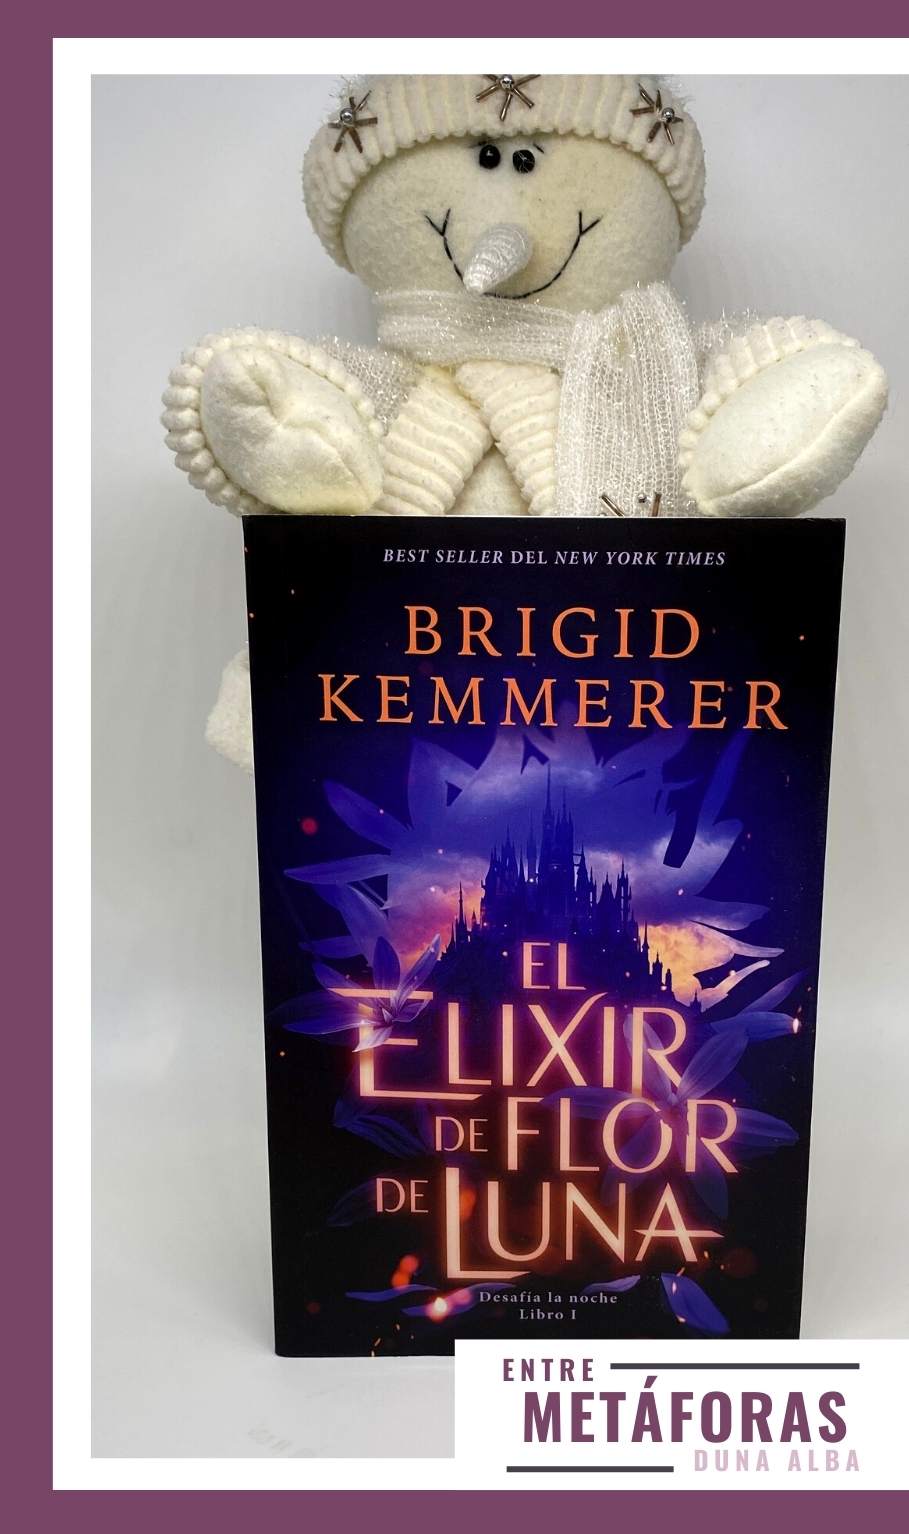 El elixir de flor de luna, de Brigid Kemmerer